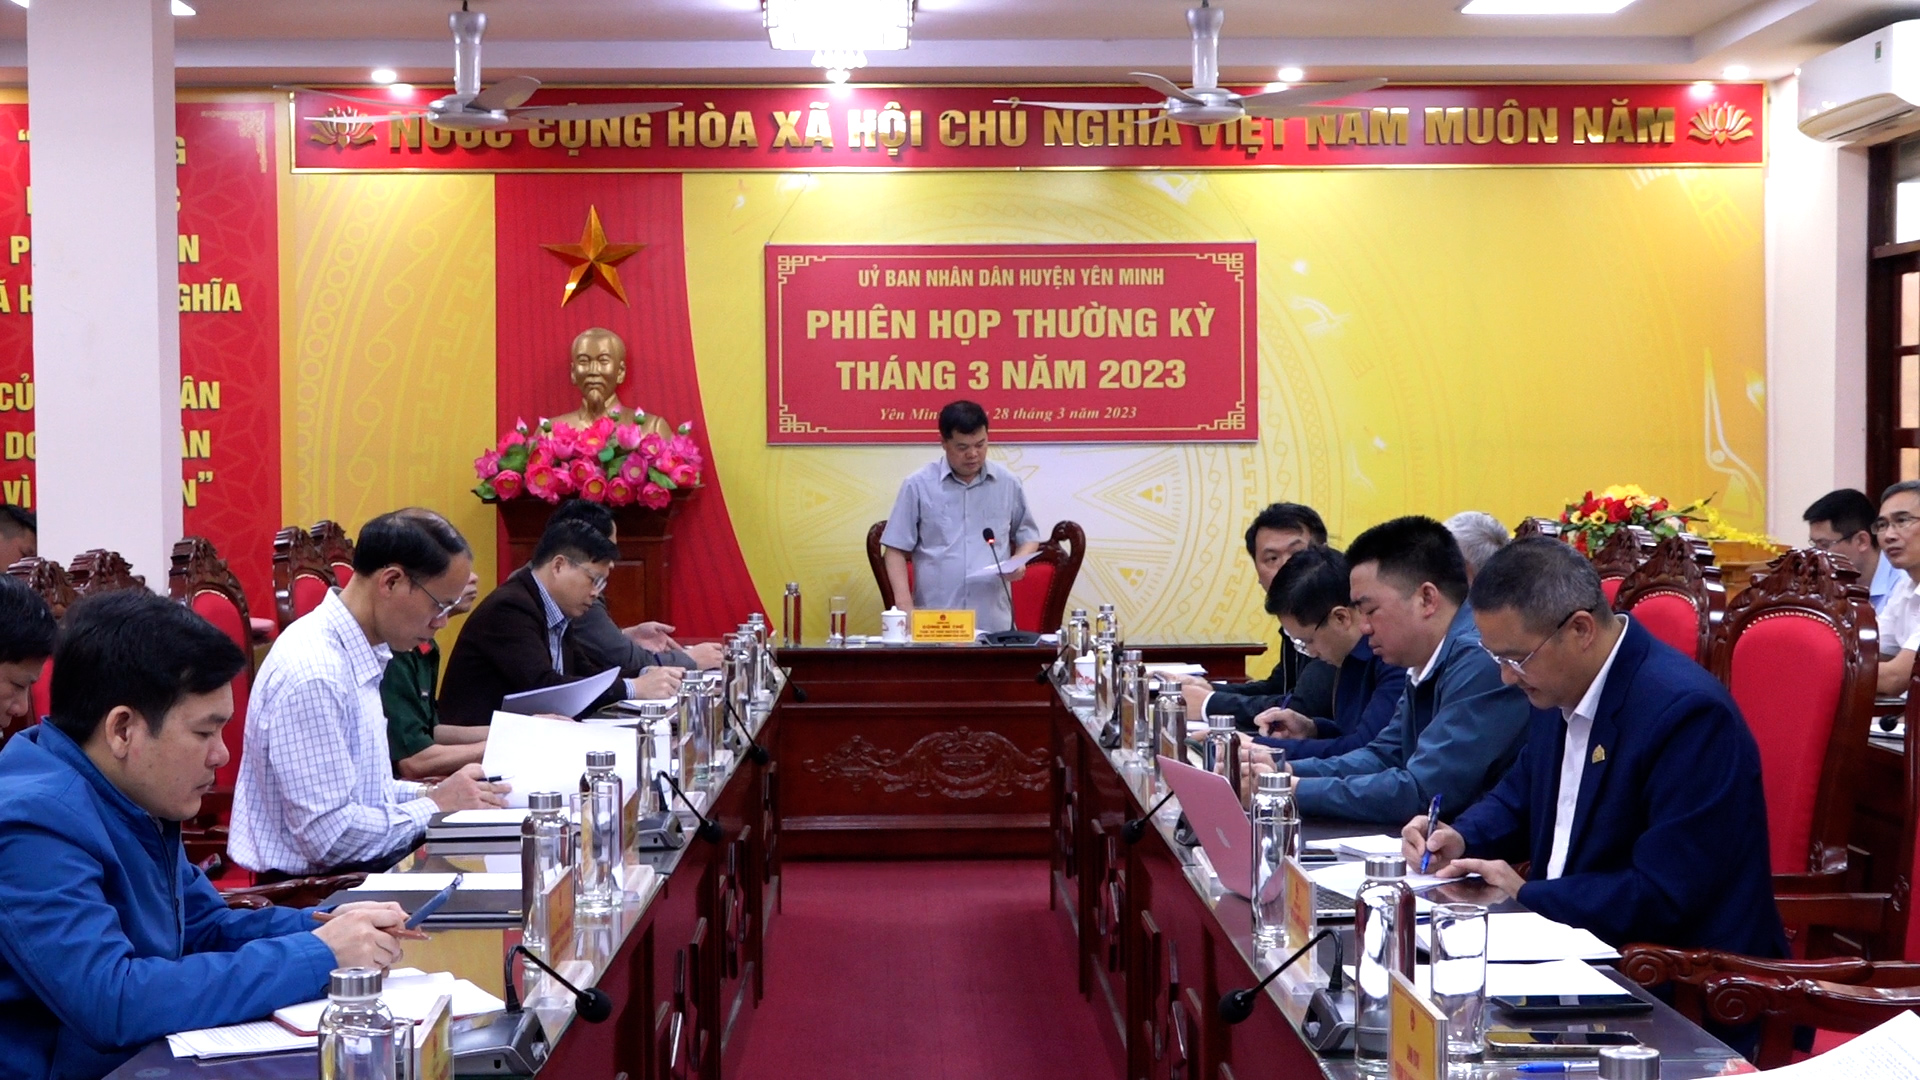 UBND huyện Yên Minh tổ chức phiên họp thường kỳ tháng 3 năm 2023